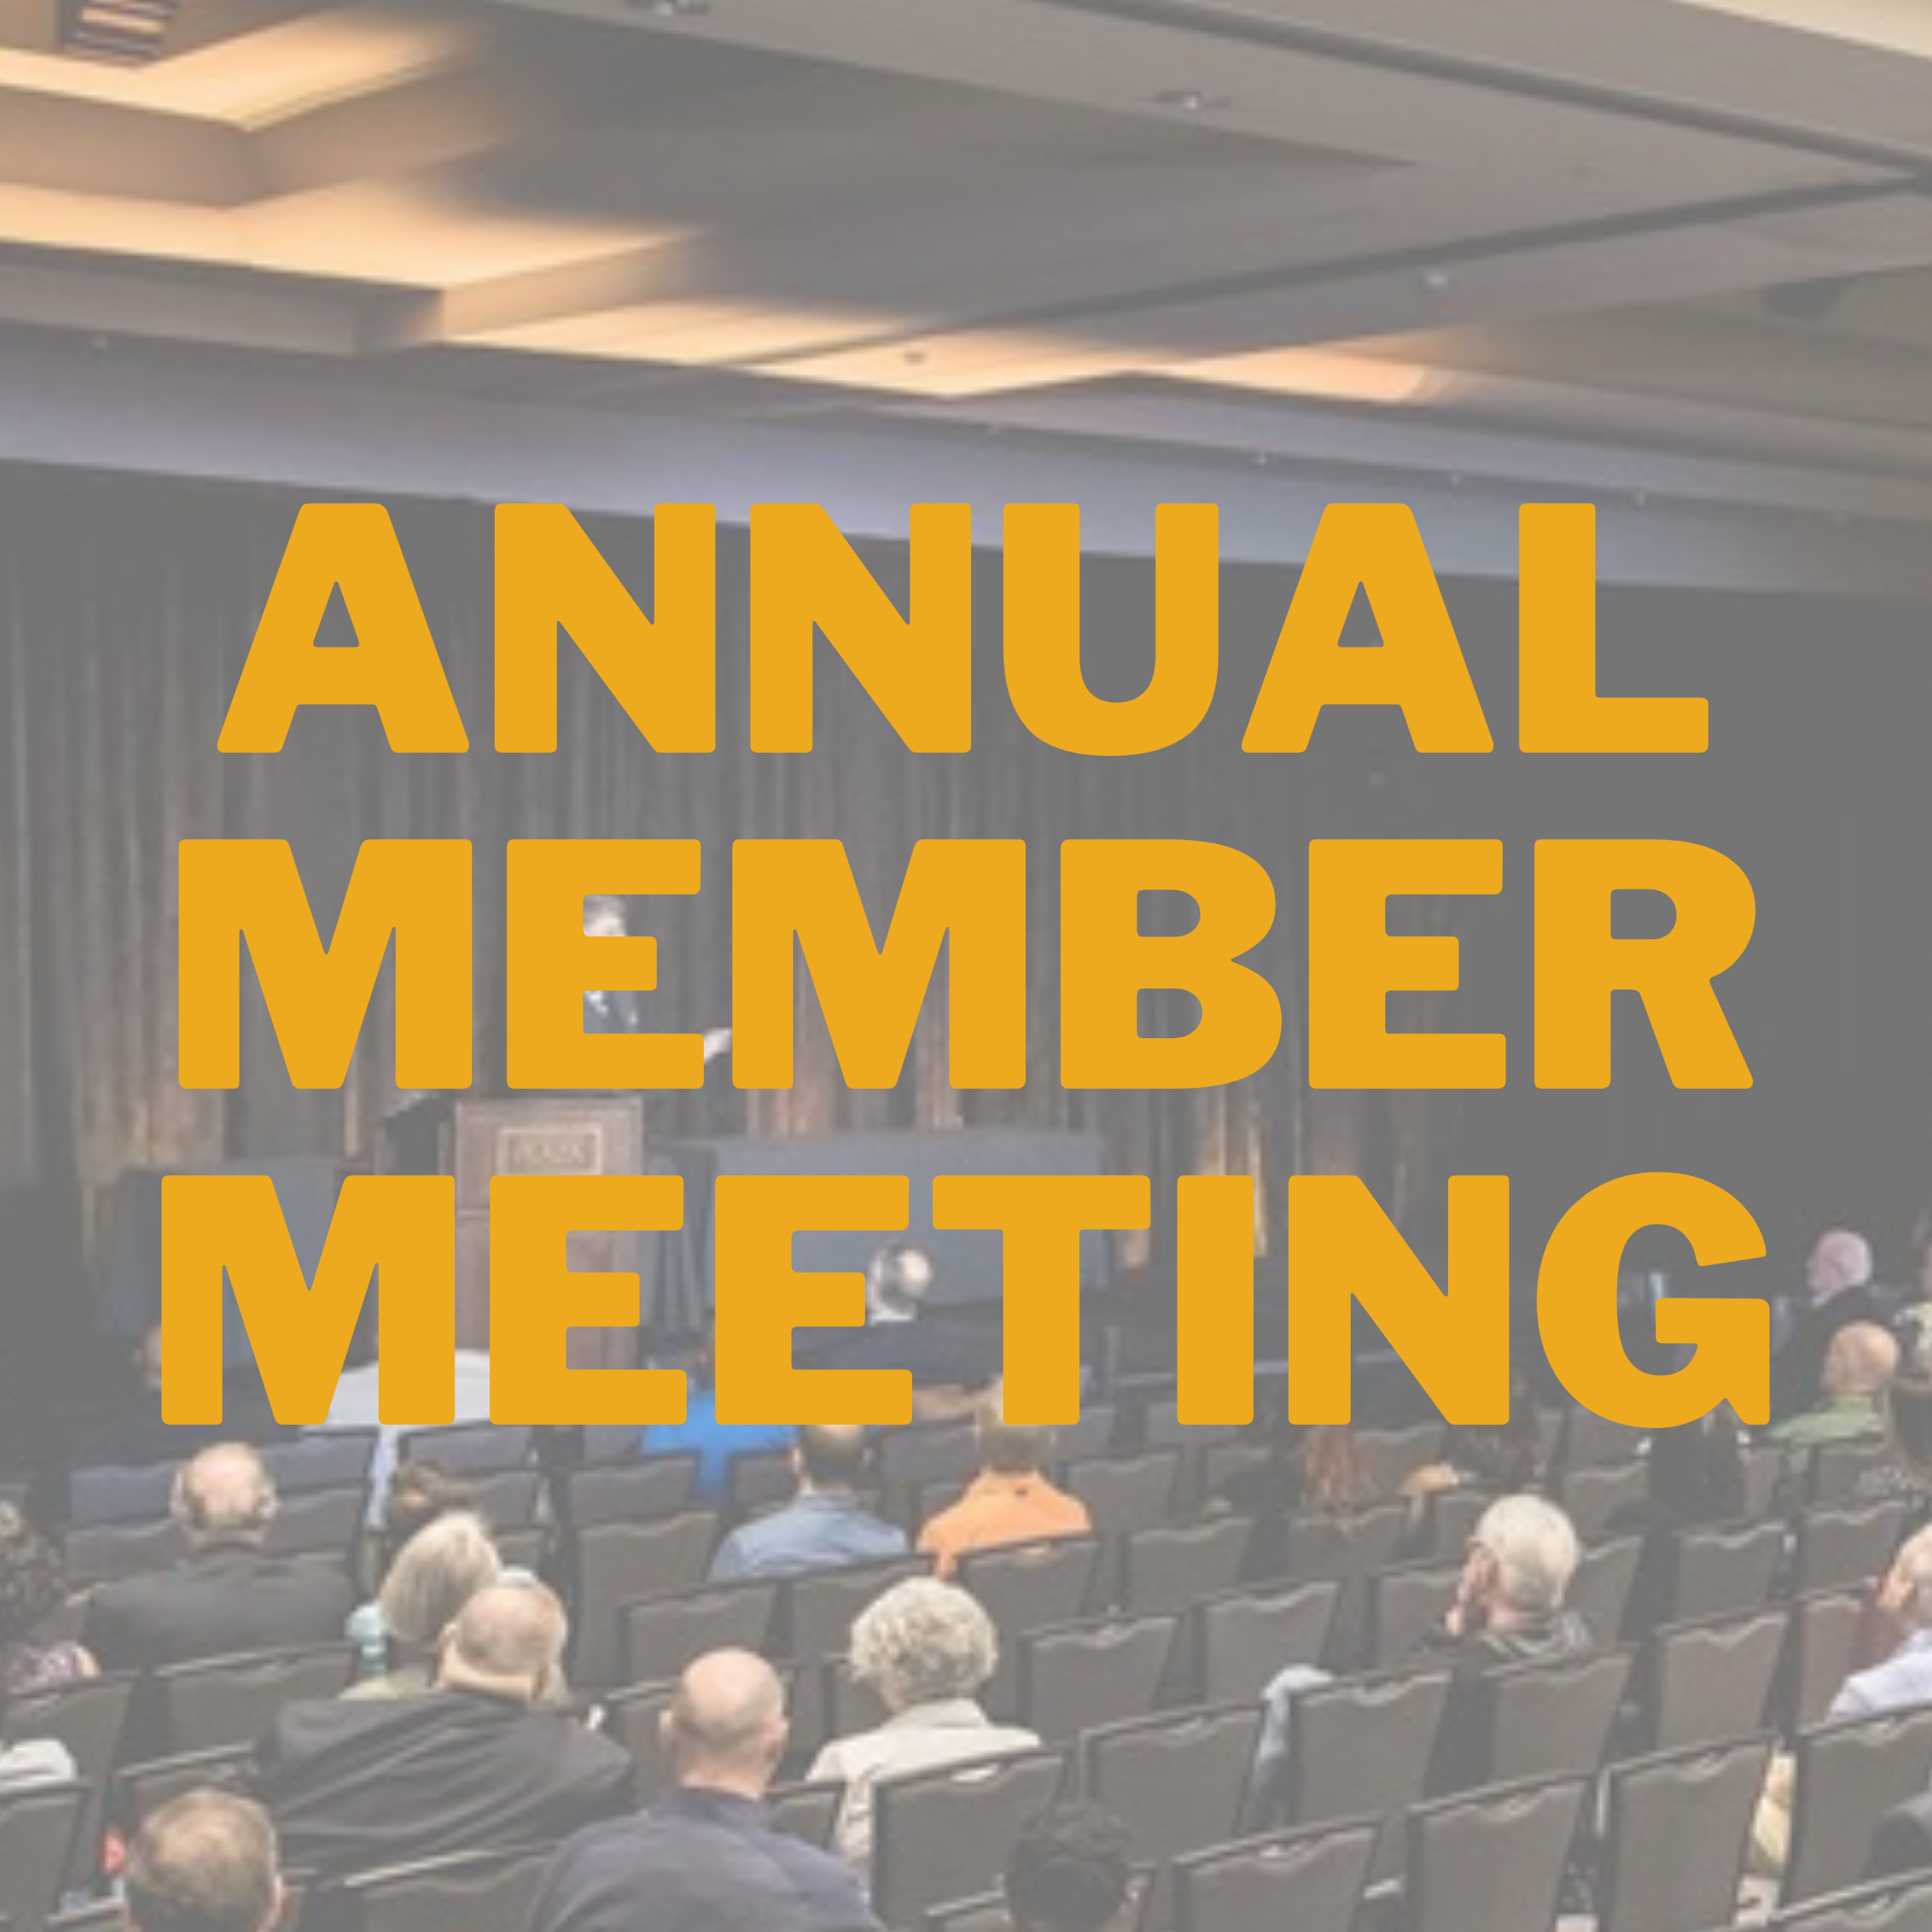 annual member meeting